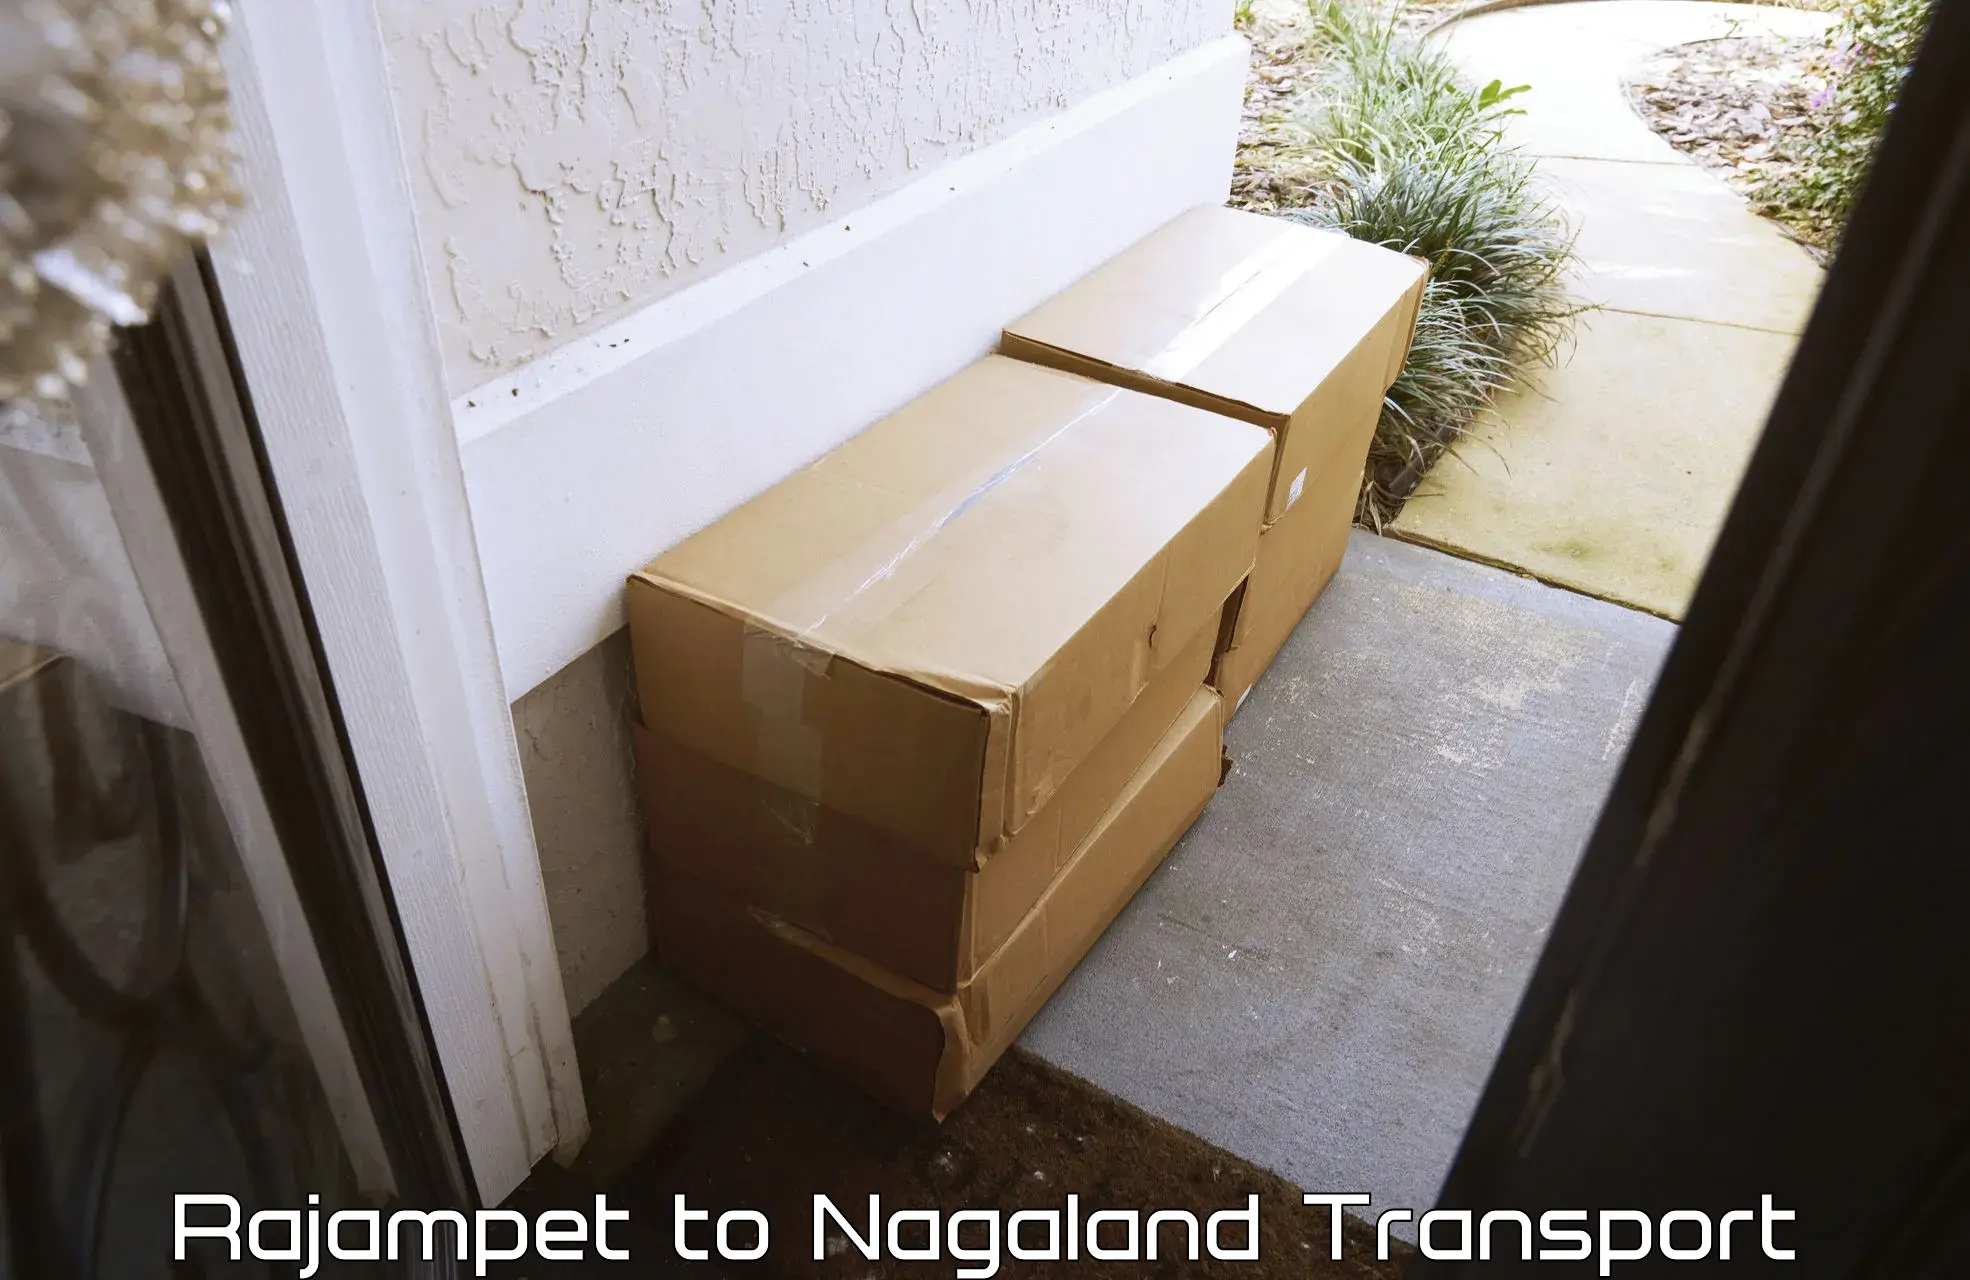 Nationwide transport services Rajampet to Nagaland